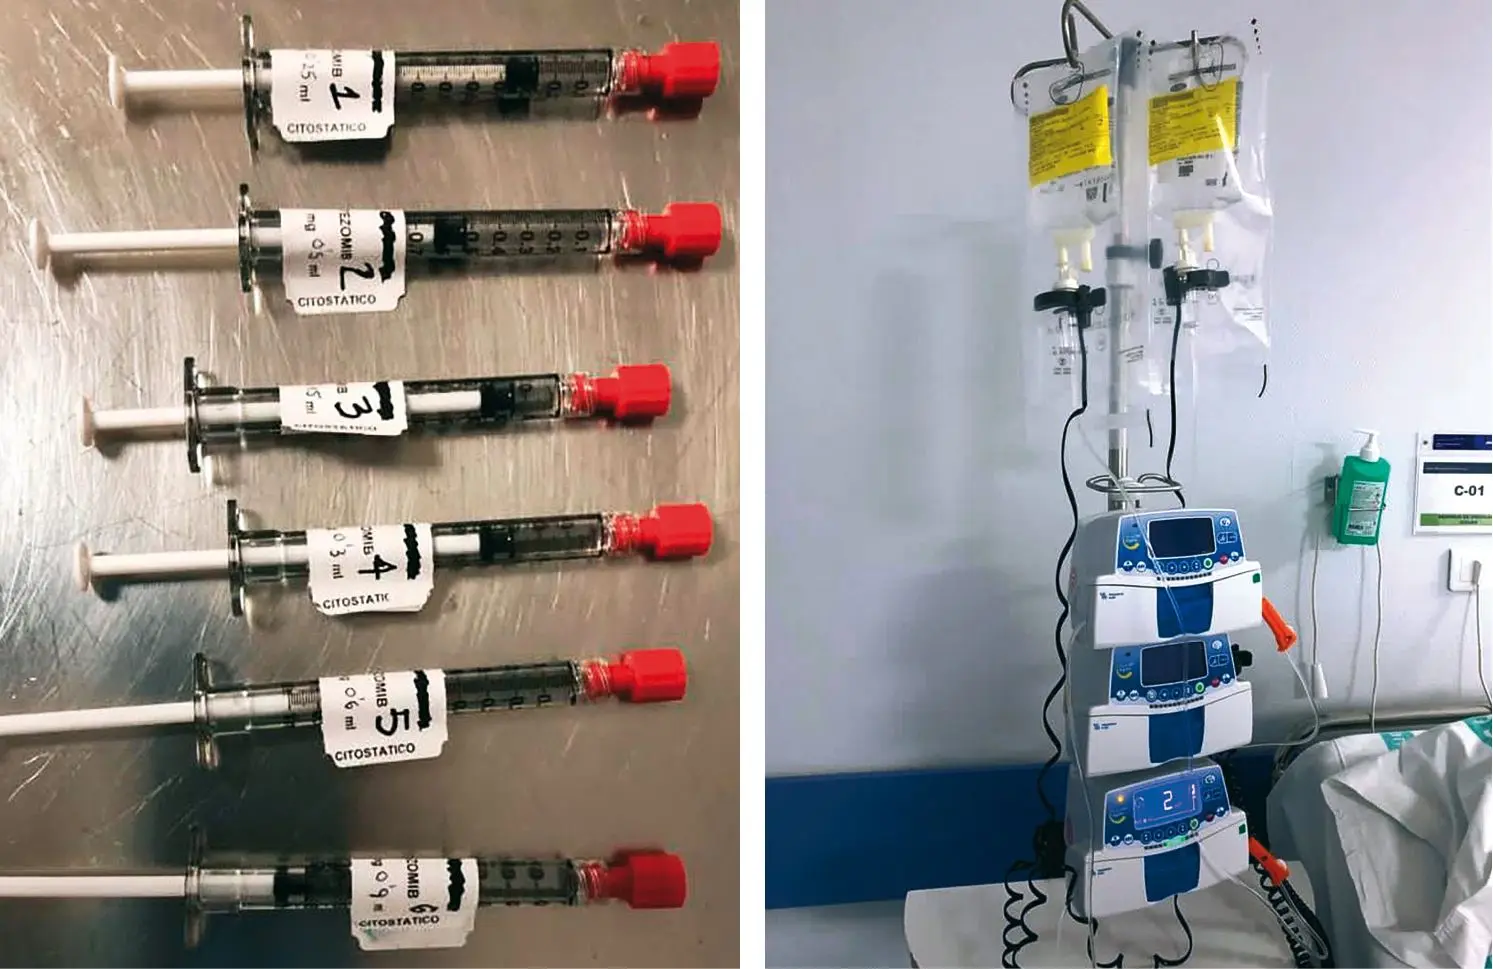 Material utilizado en desensibilización subcutánea a antineoplásicos (izquierda) e intravenosa (derecha).